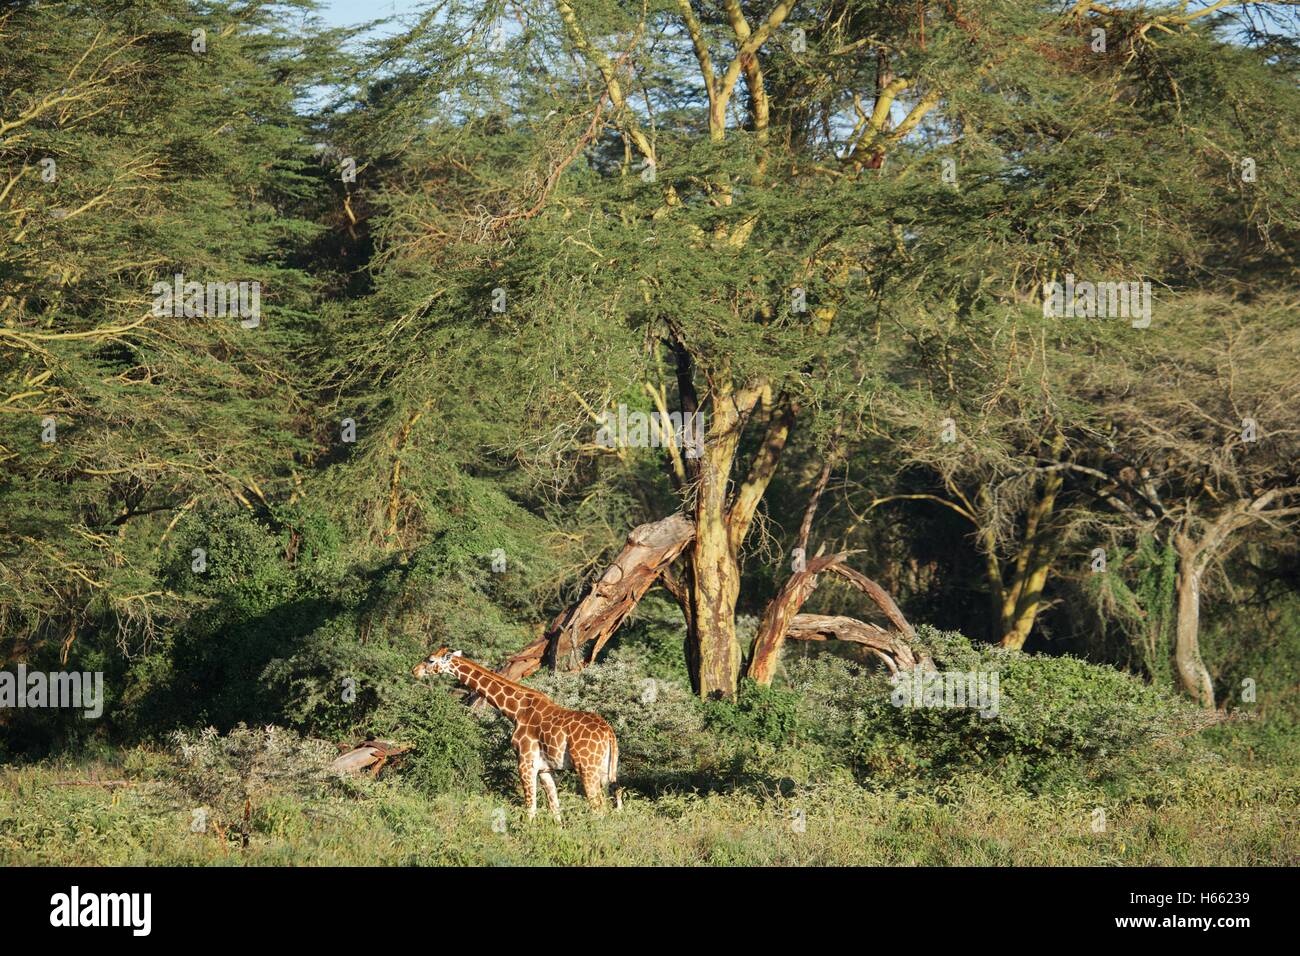 Viewing wild Rothschild giraffe on safari in Lake Nakuru, Kenya Stock Photo